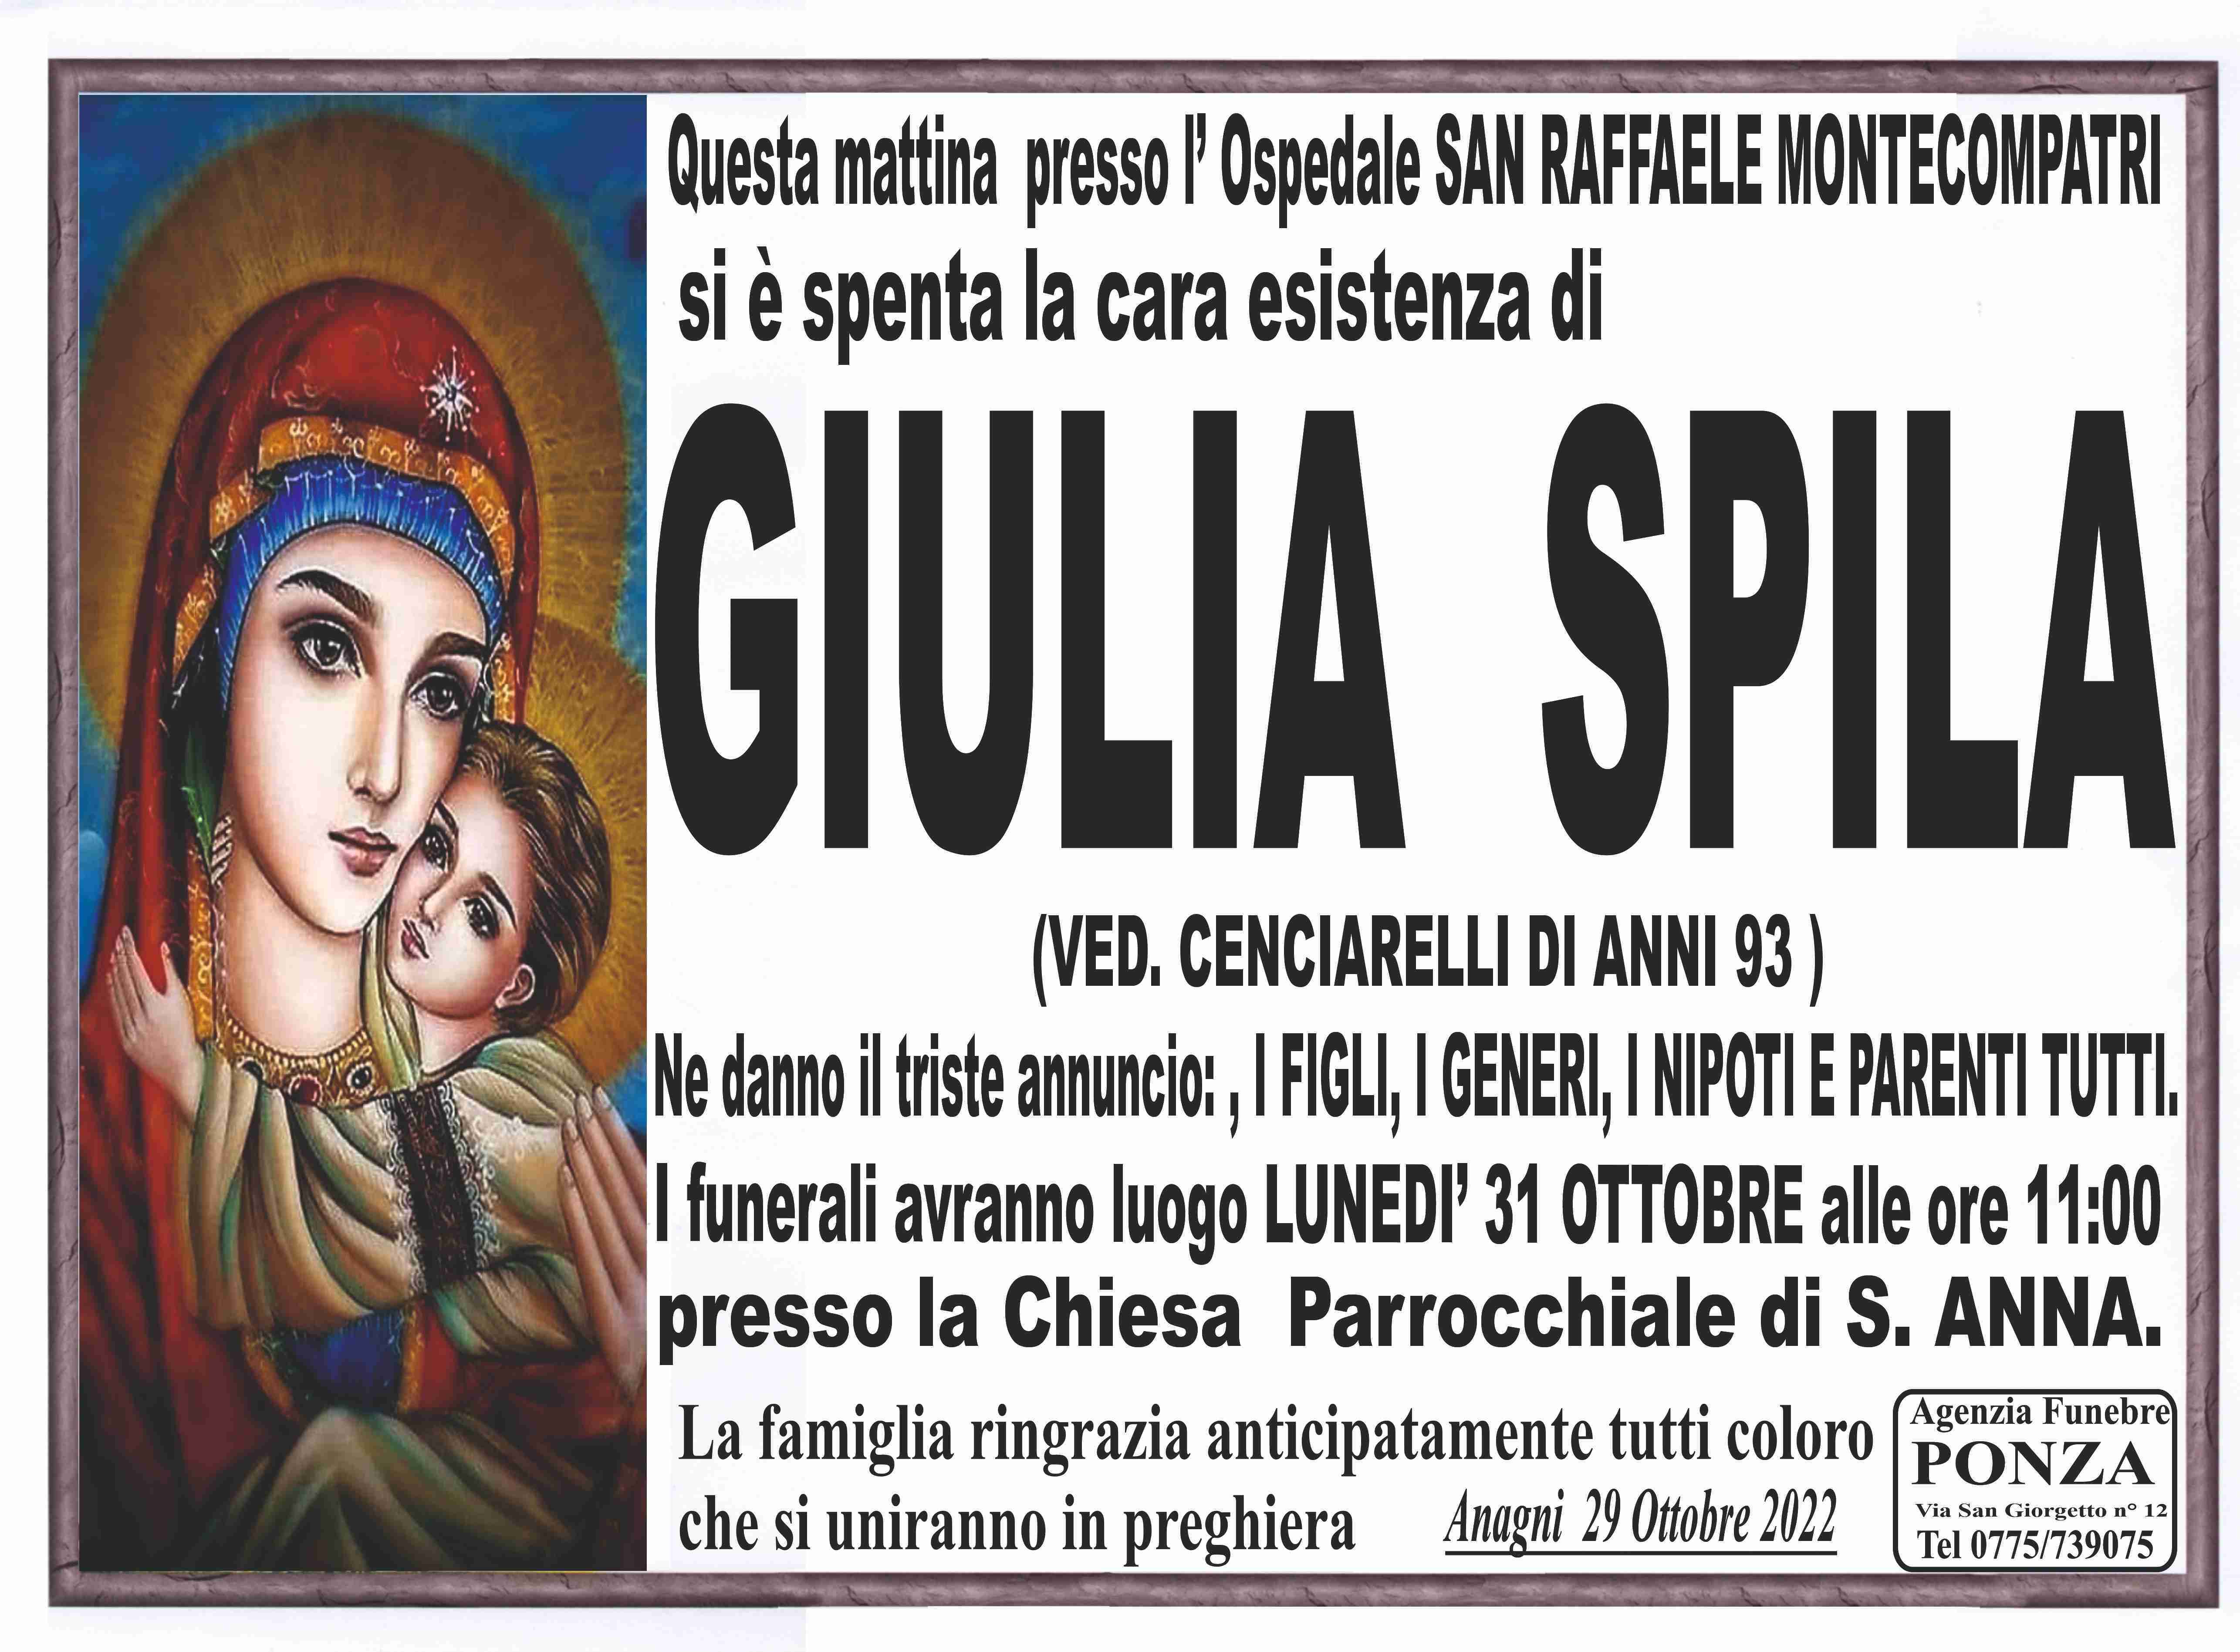 Giulia Spila